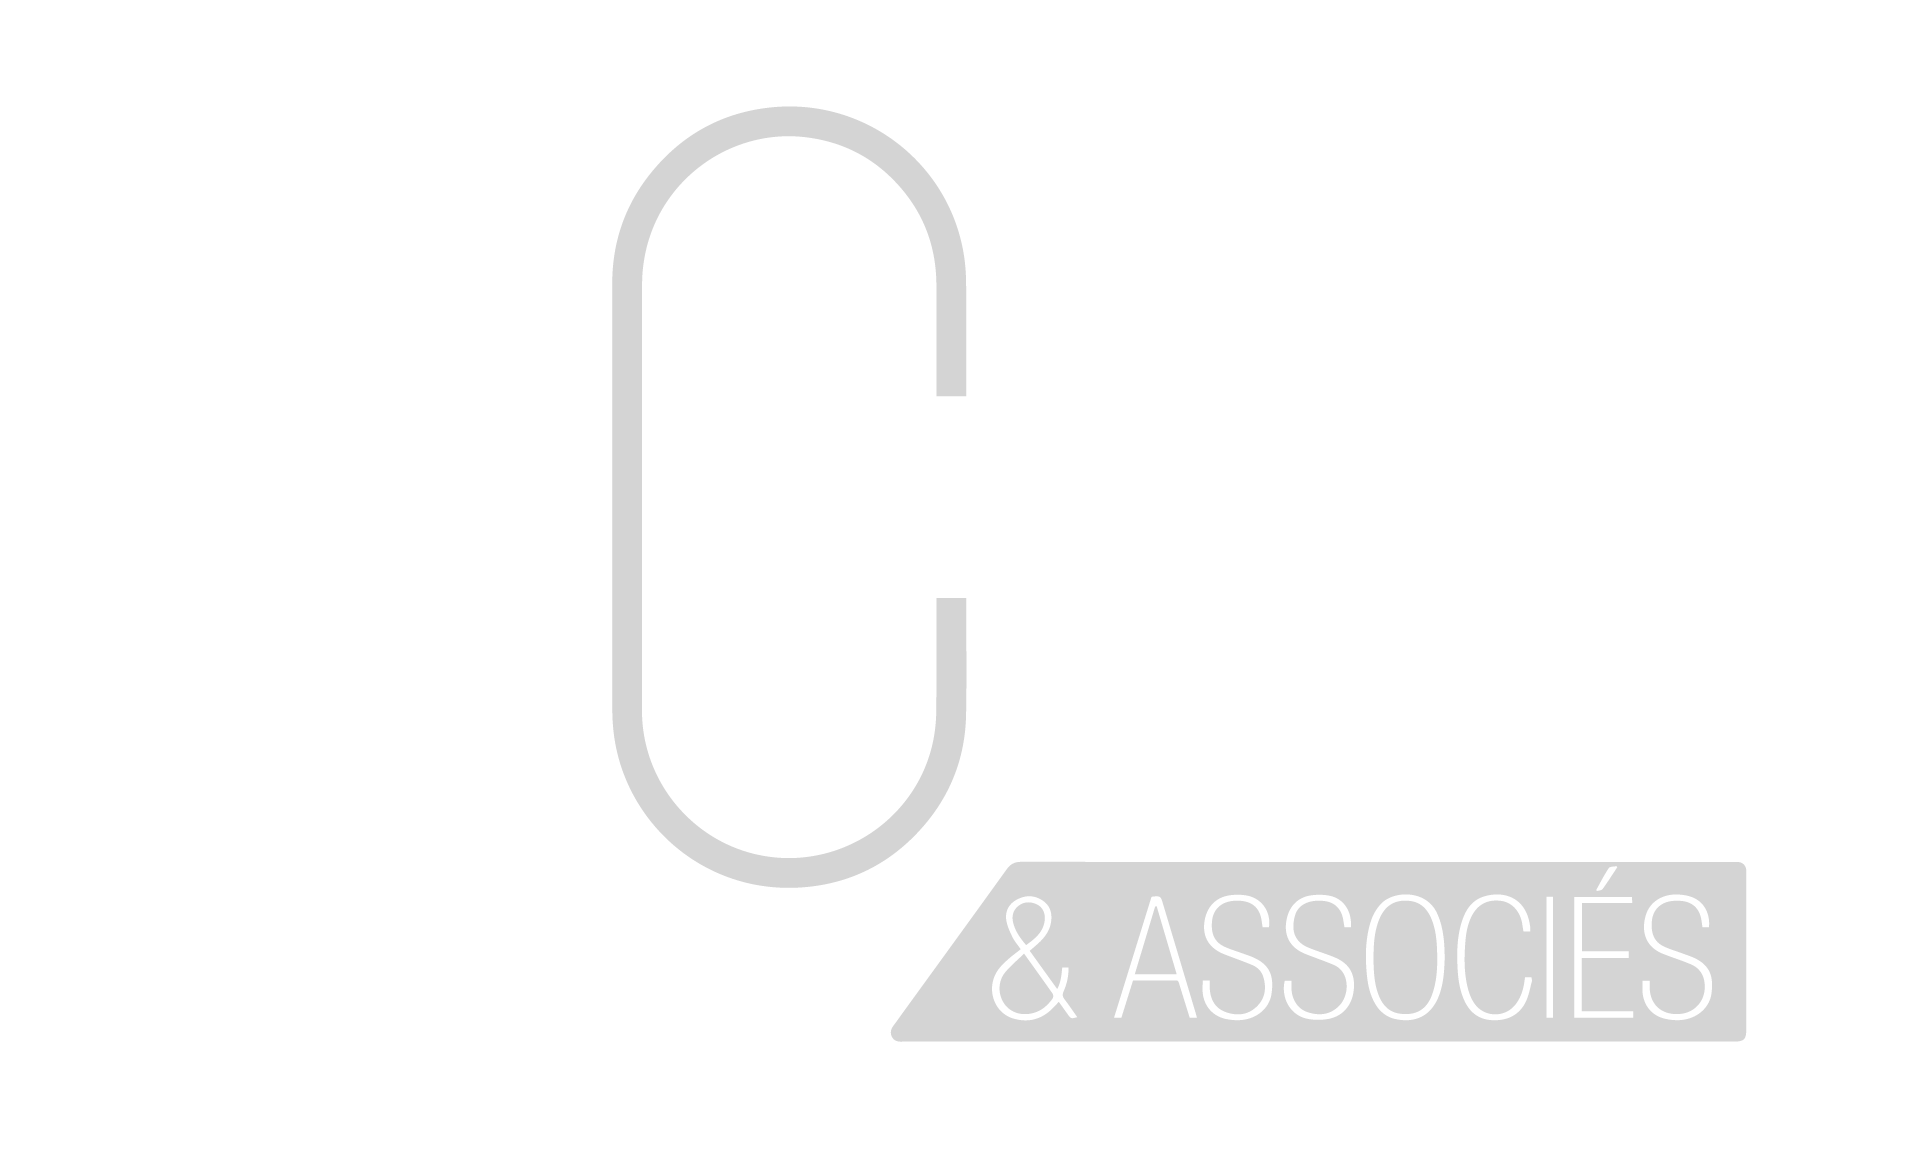 ACE & Associés